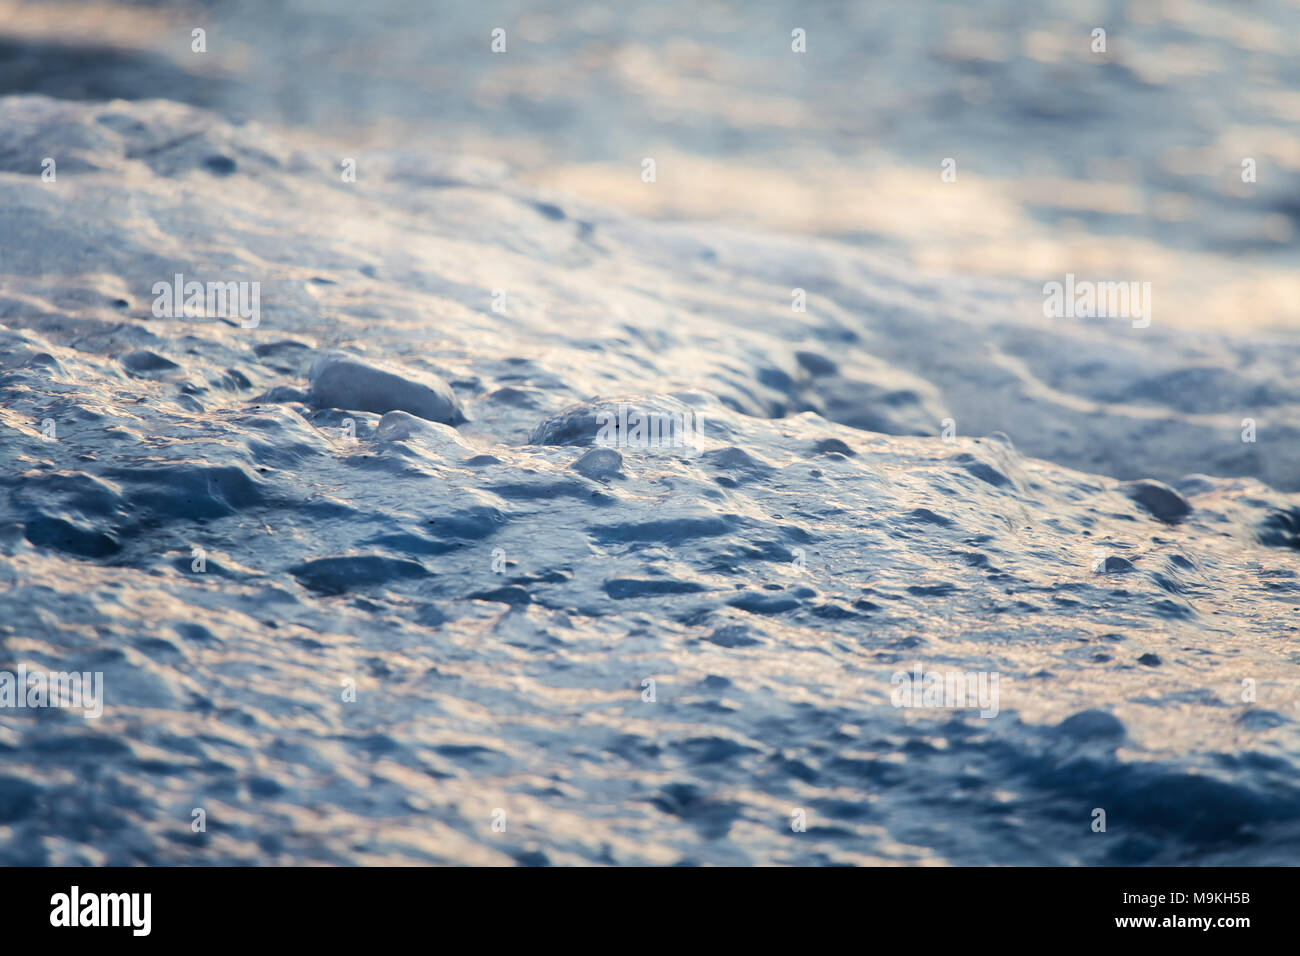 Eine schöne Nahaufnahme eines gefrorenen Meer Wasser an der Küste der Ostsee. Gefrorenes Salzwasser vawes auf einem Strand. Abstrakte closup aus Eis. Stockfoto